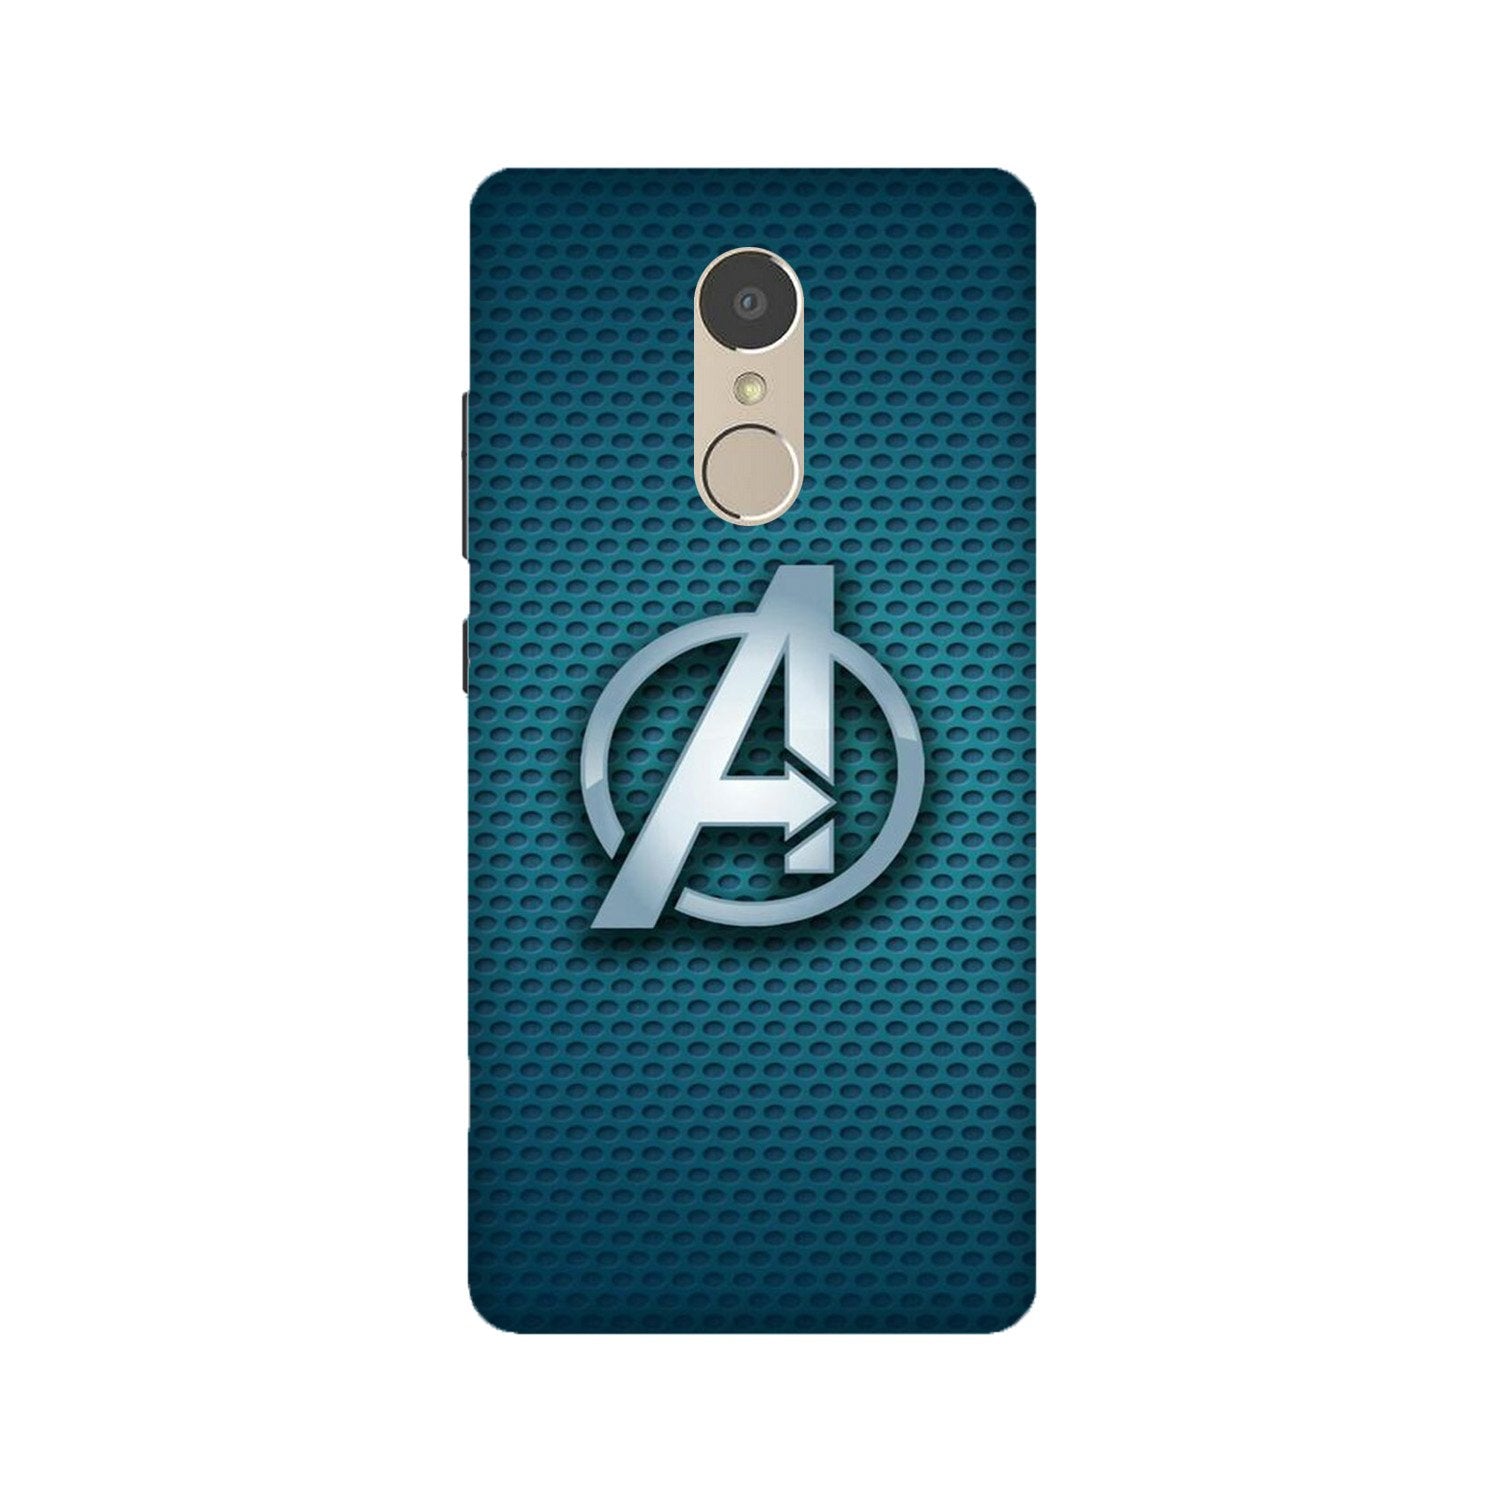 Avengers Case for Lenovo K6 Note (Design No. 246)